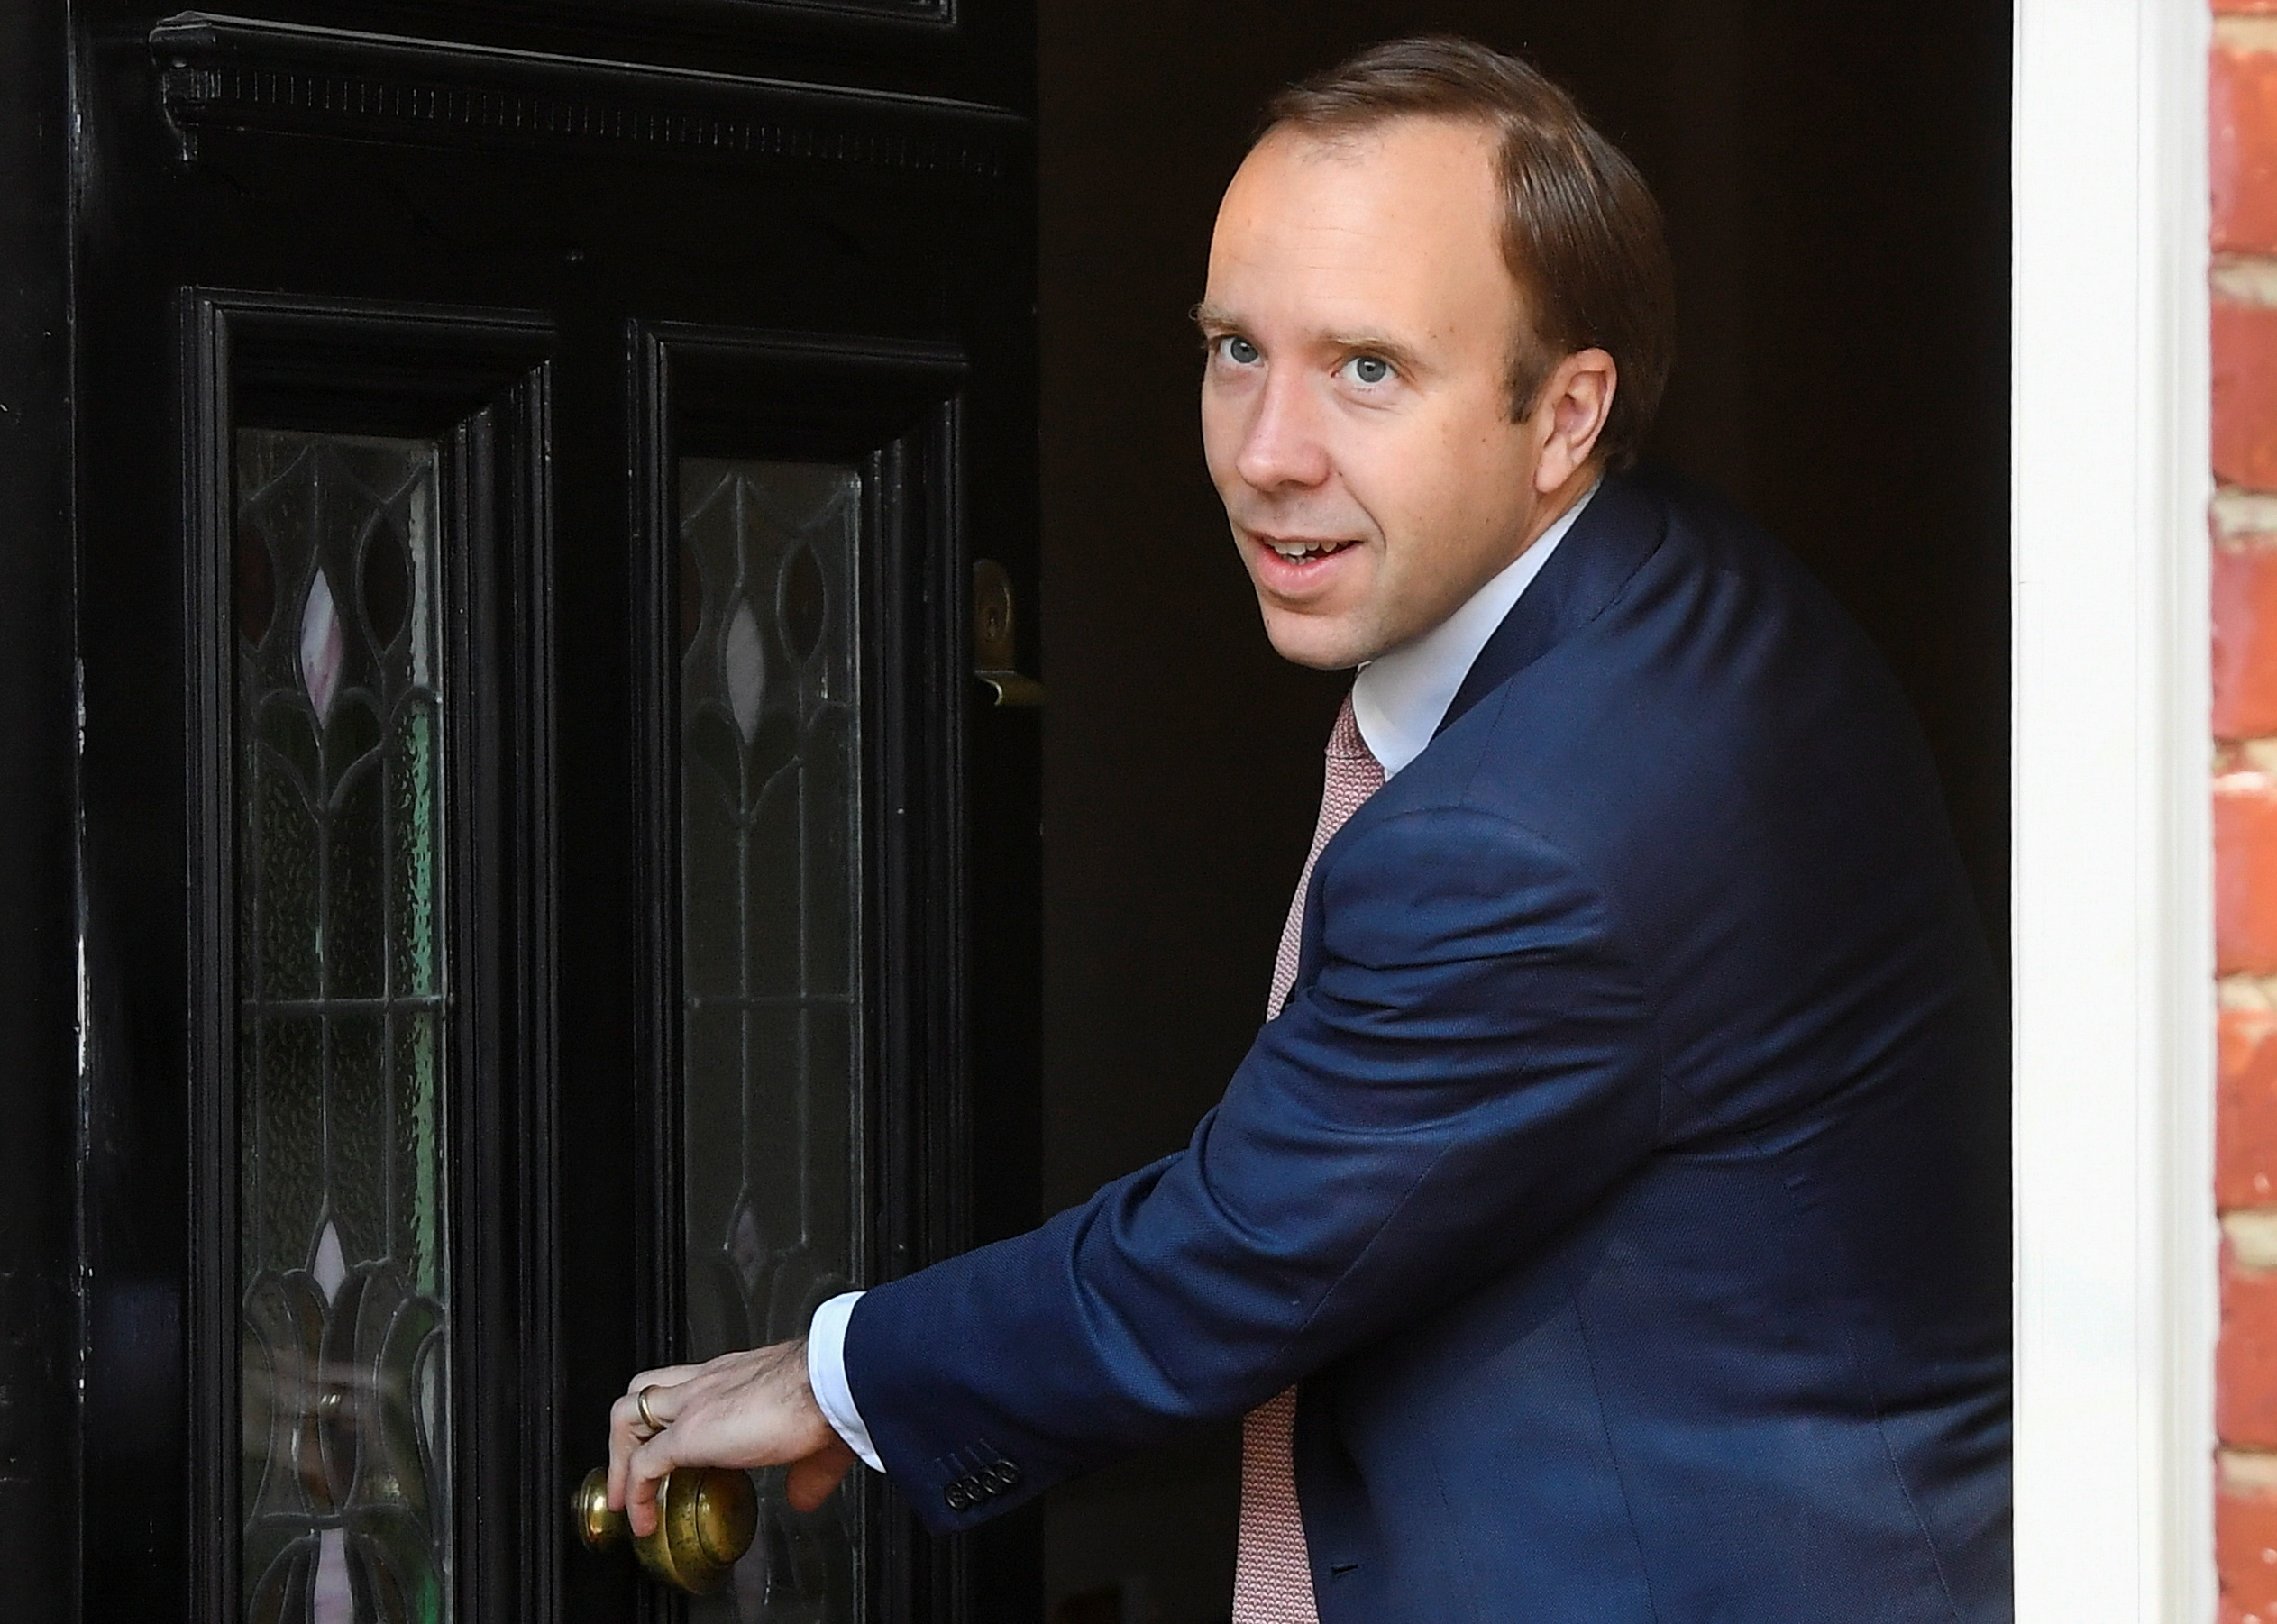 El secretari britànic de Salut, Matt Hancock, surt de casa seva, a Londres, Gran Bretanya, el 27 de maig de 2021. REUTERS / Toby Melville